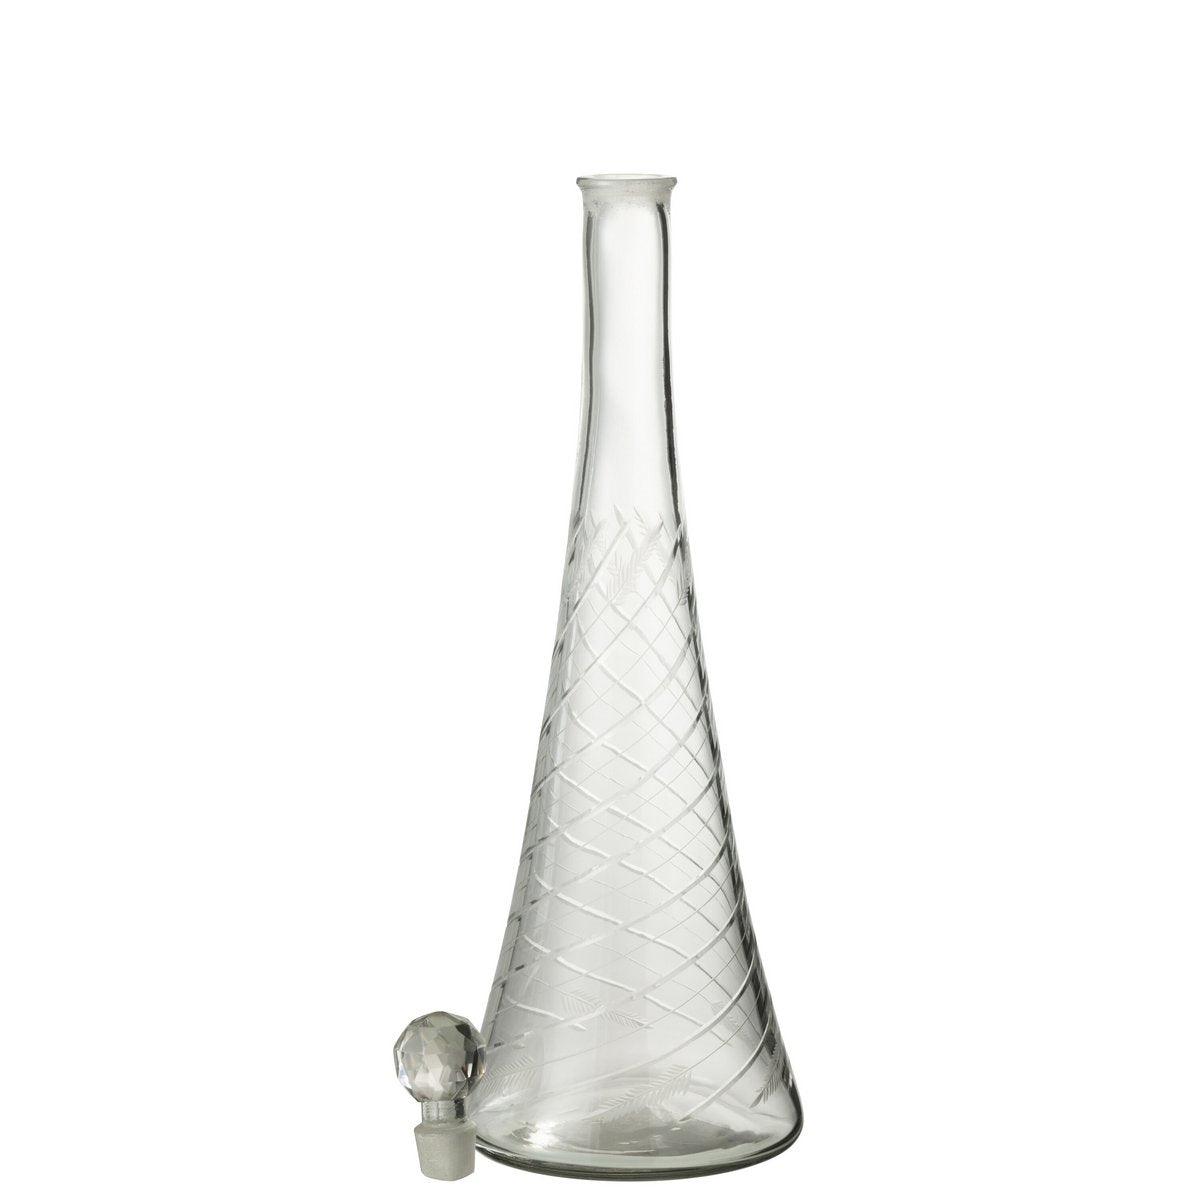 Designer Karaffe Halsglas Transparent mit verschluss 43cm - HomeDesign Knaus